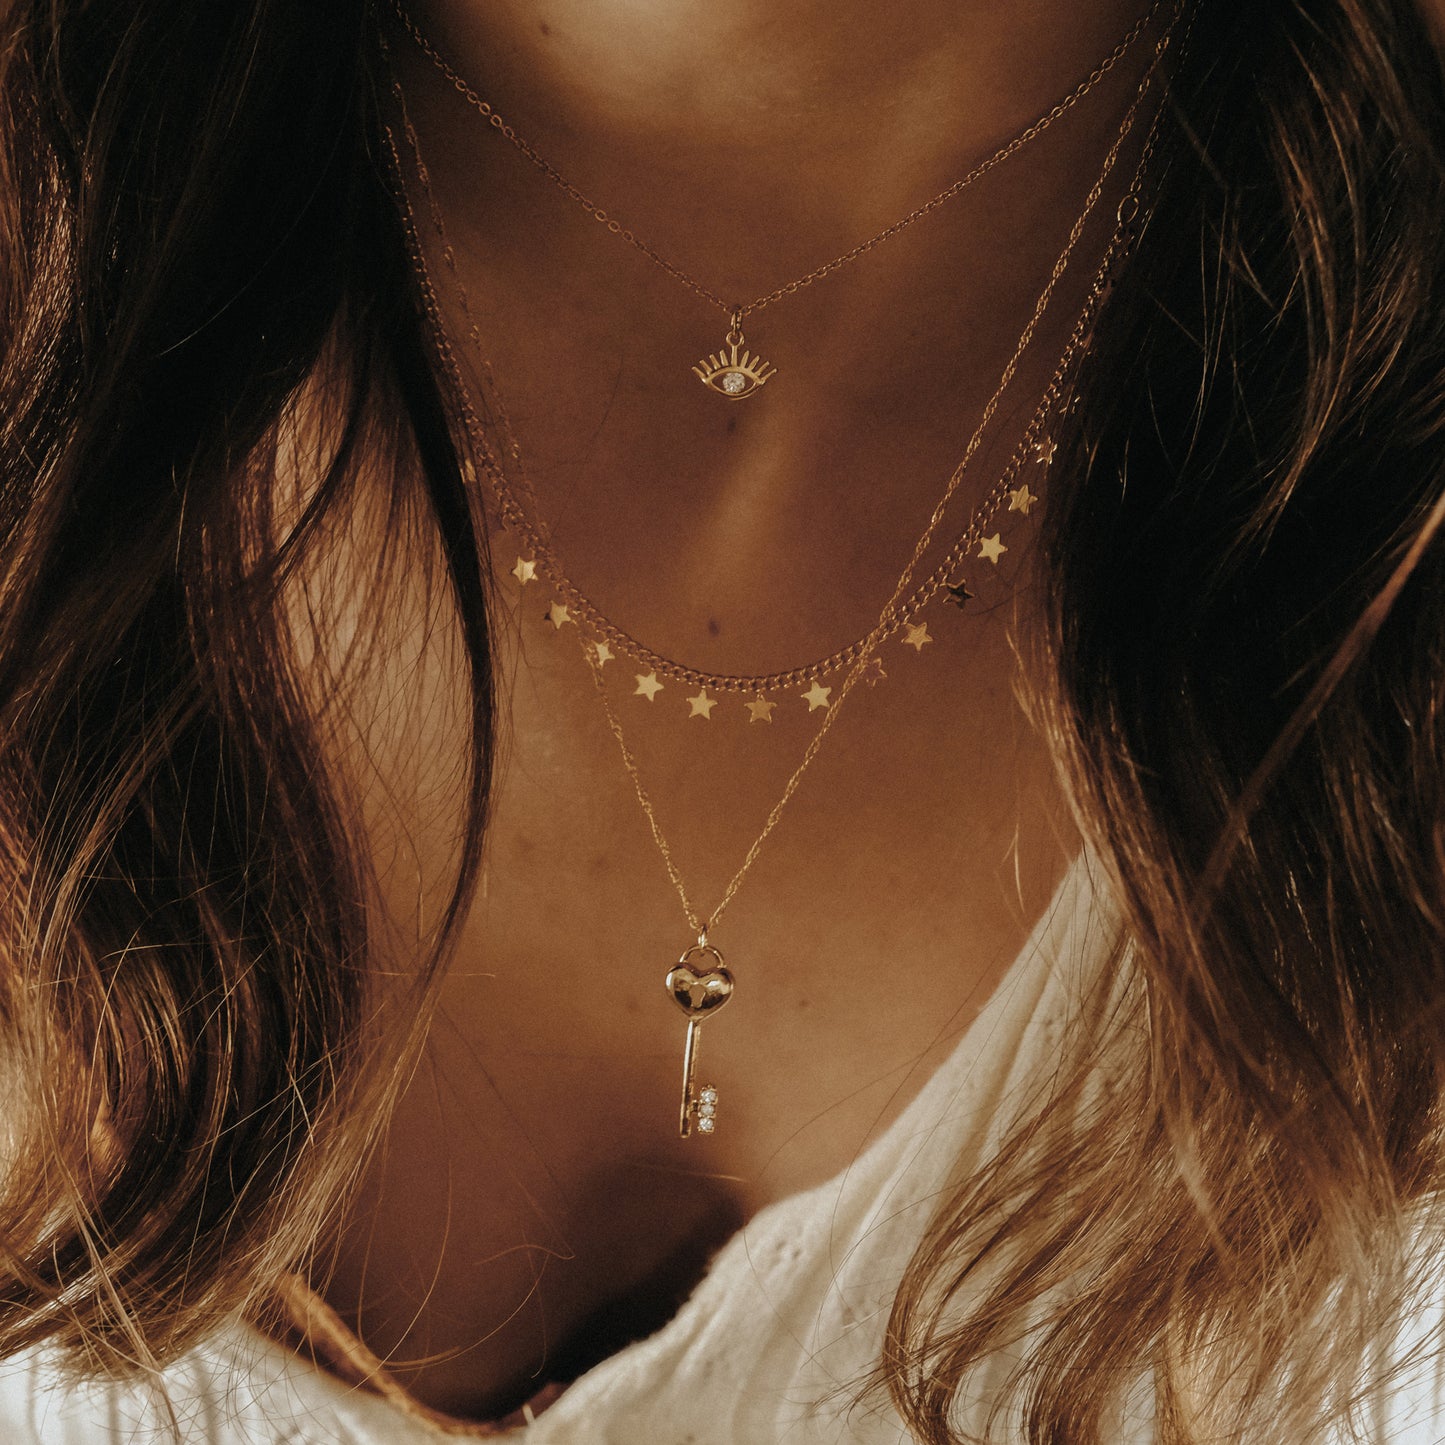 “Freyja” necklace